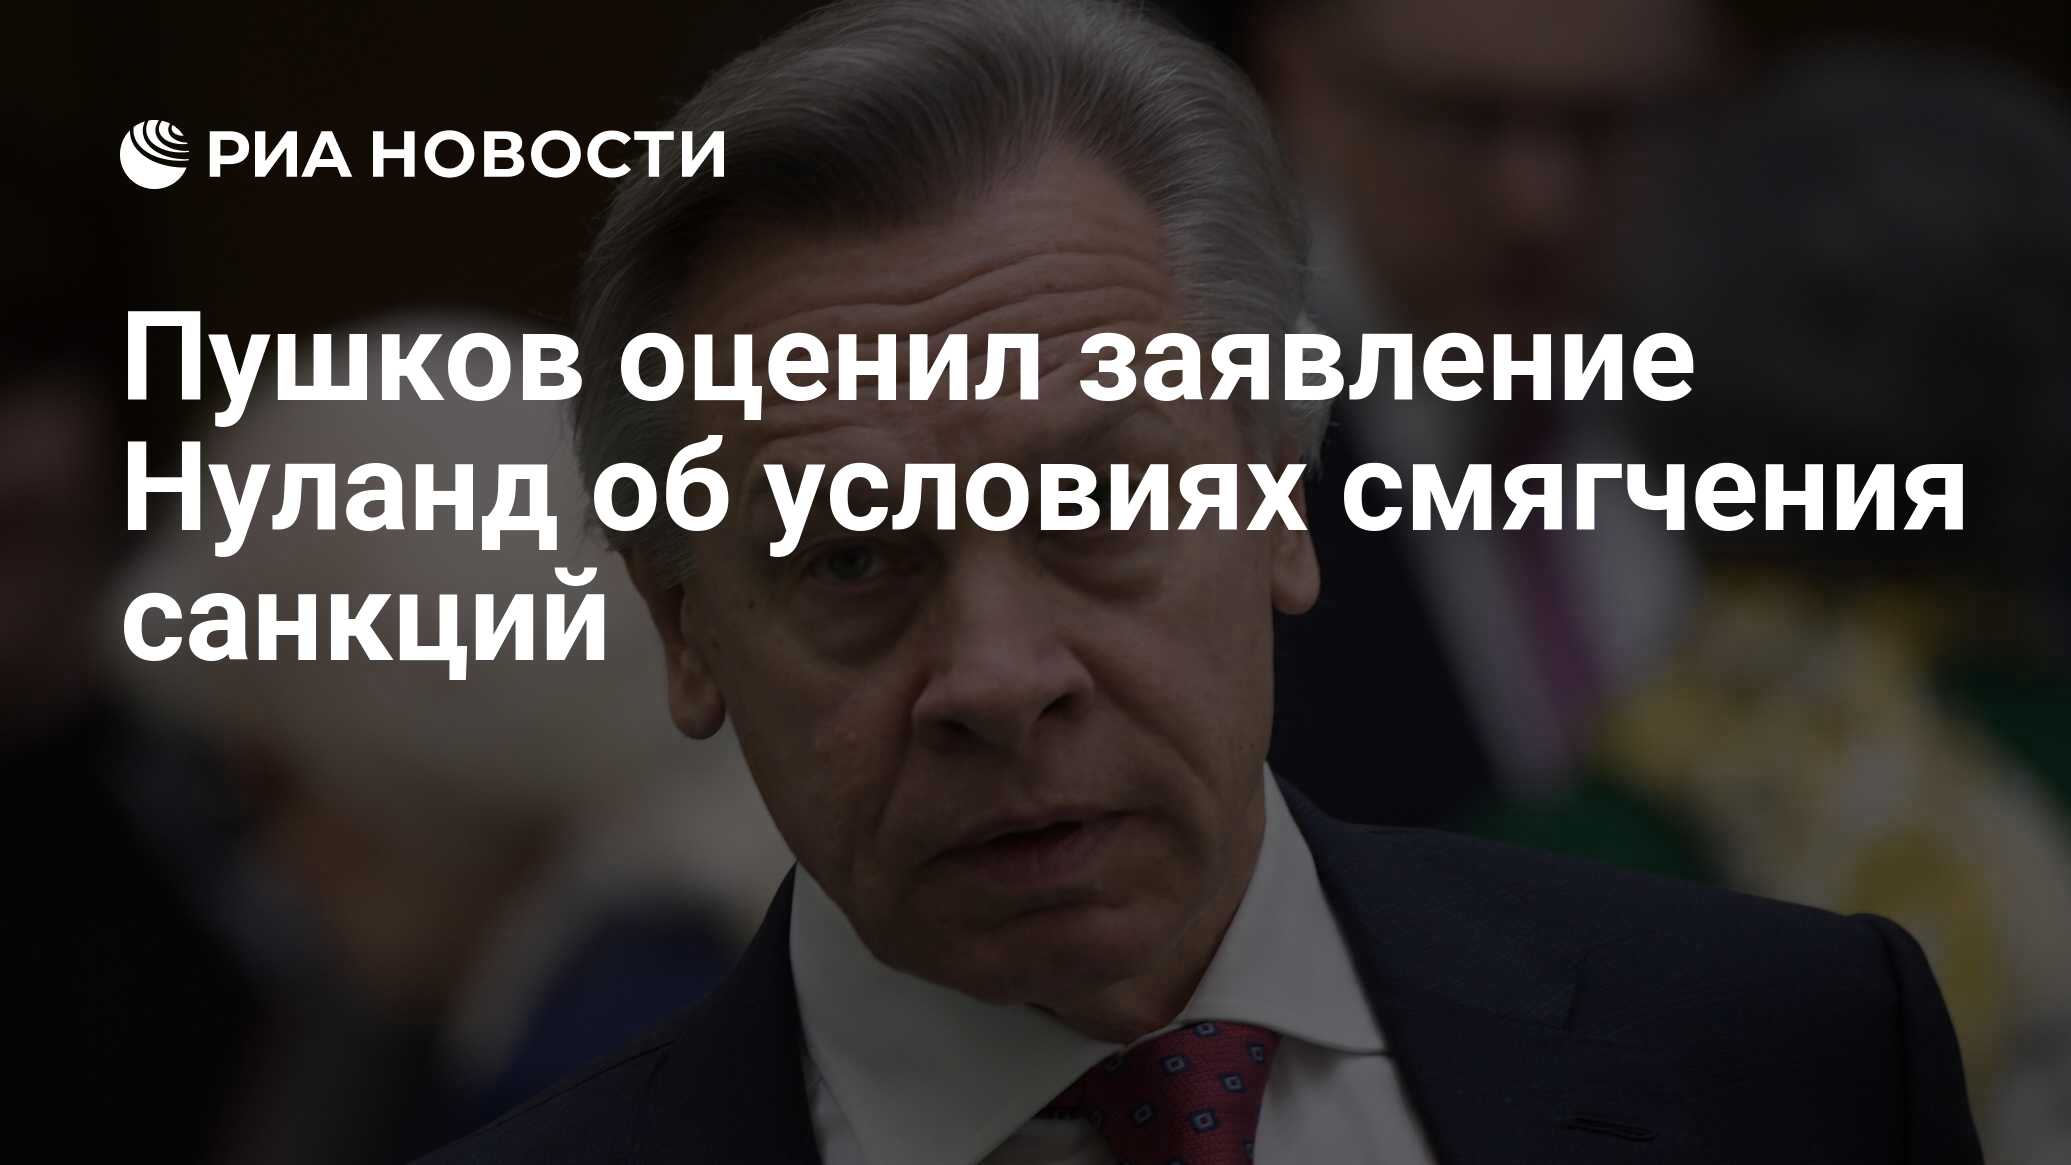 Пушков оценил заявление Нуланд об условиях смягчения санкций